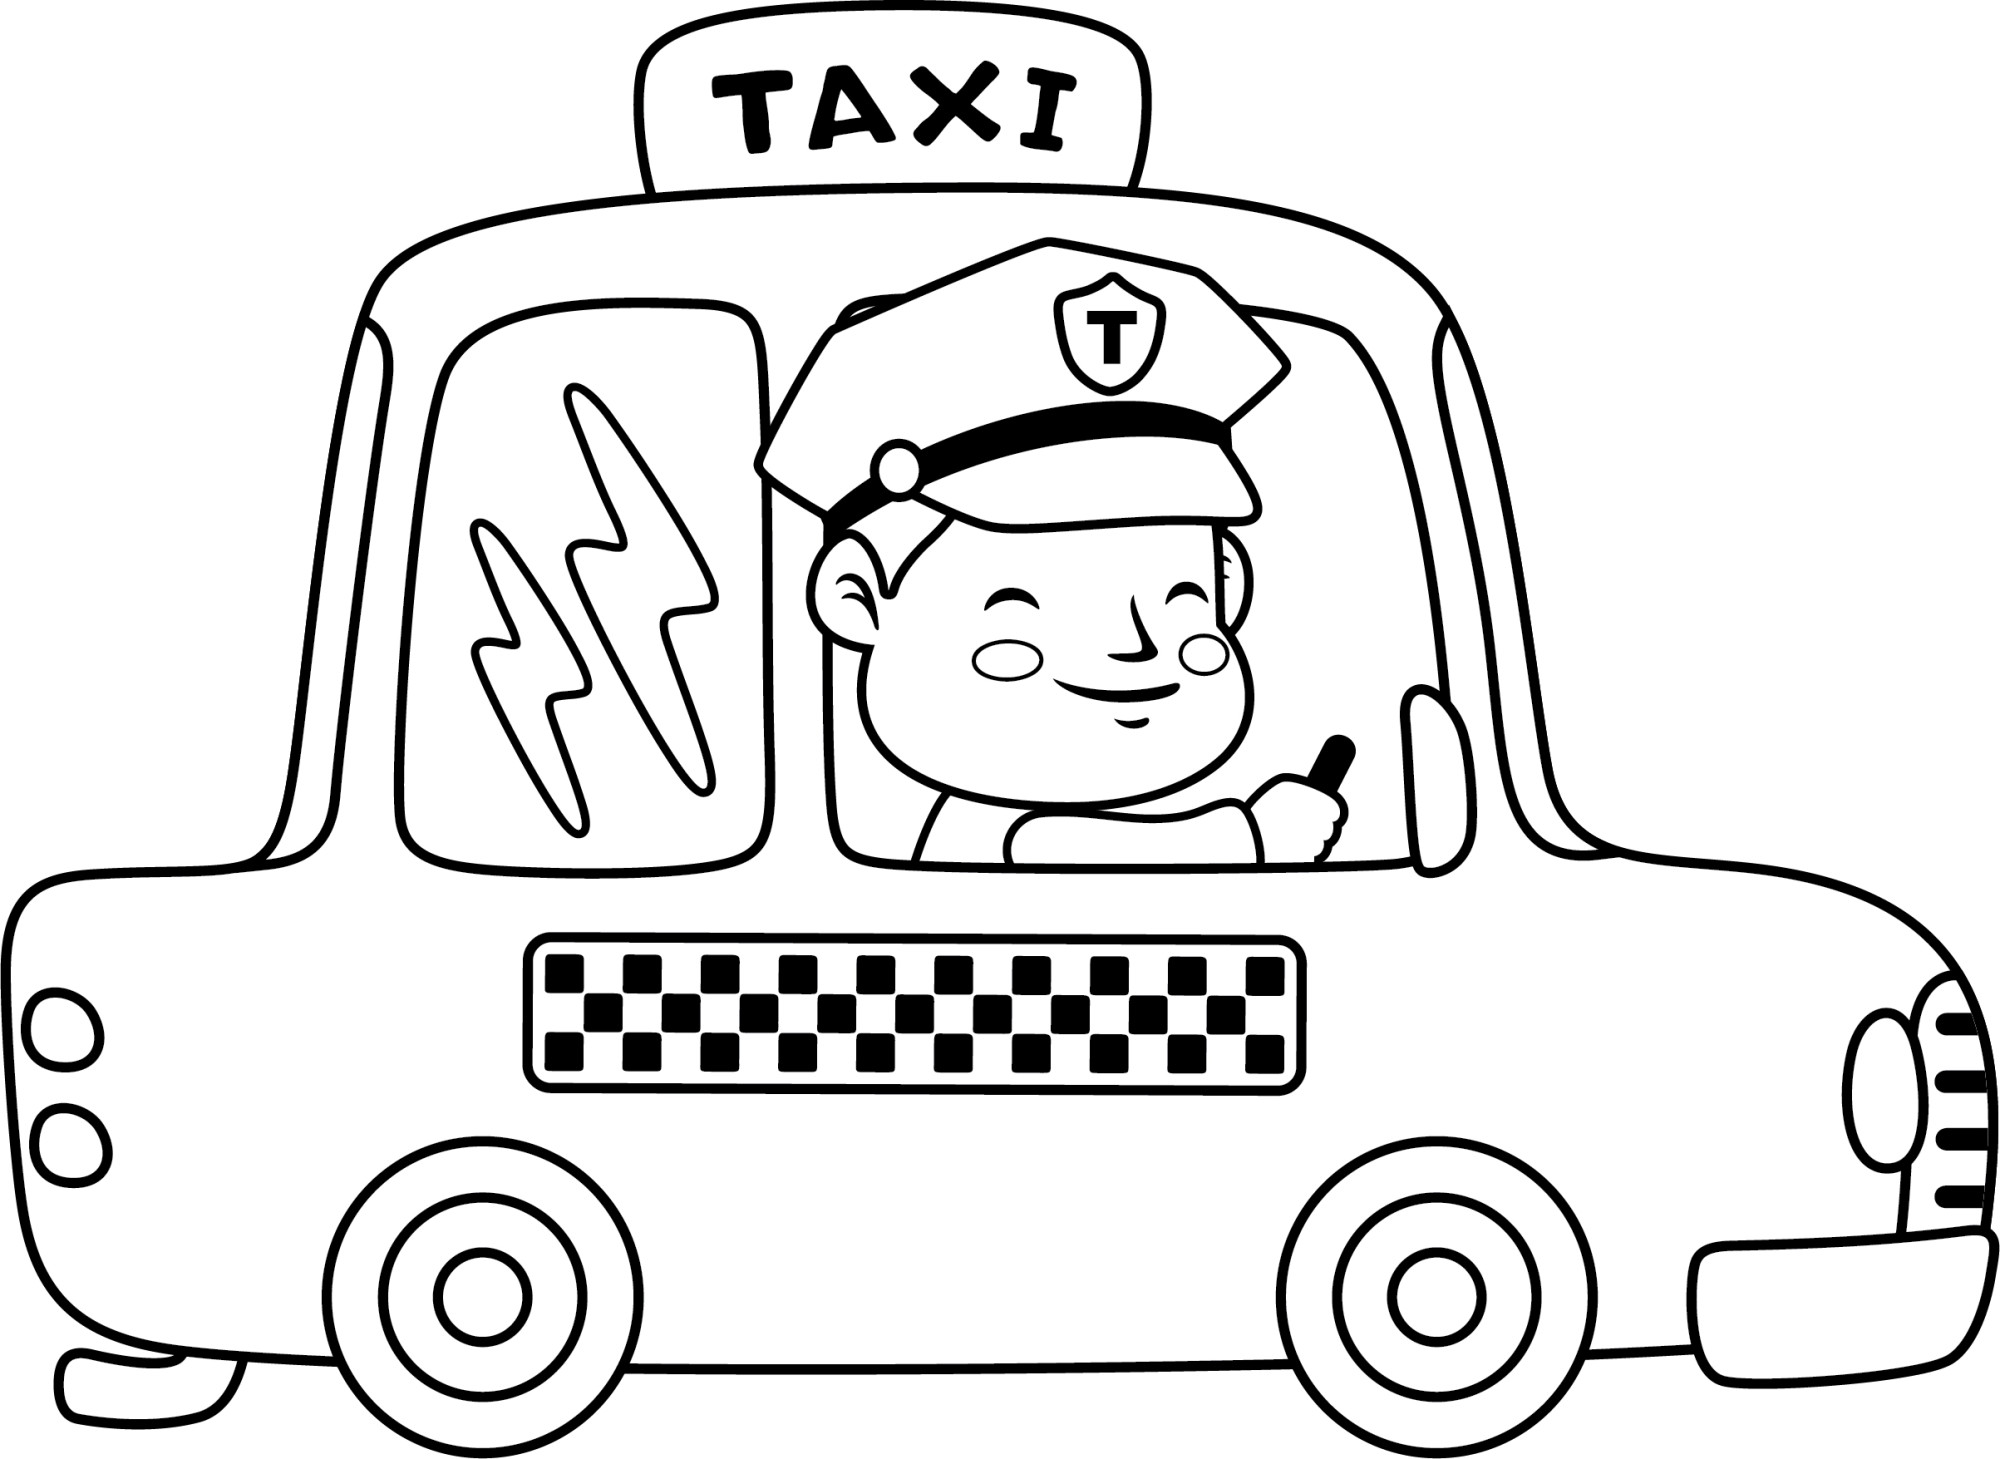 Раскраска для детей: счастливый водитель такси